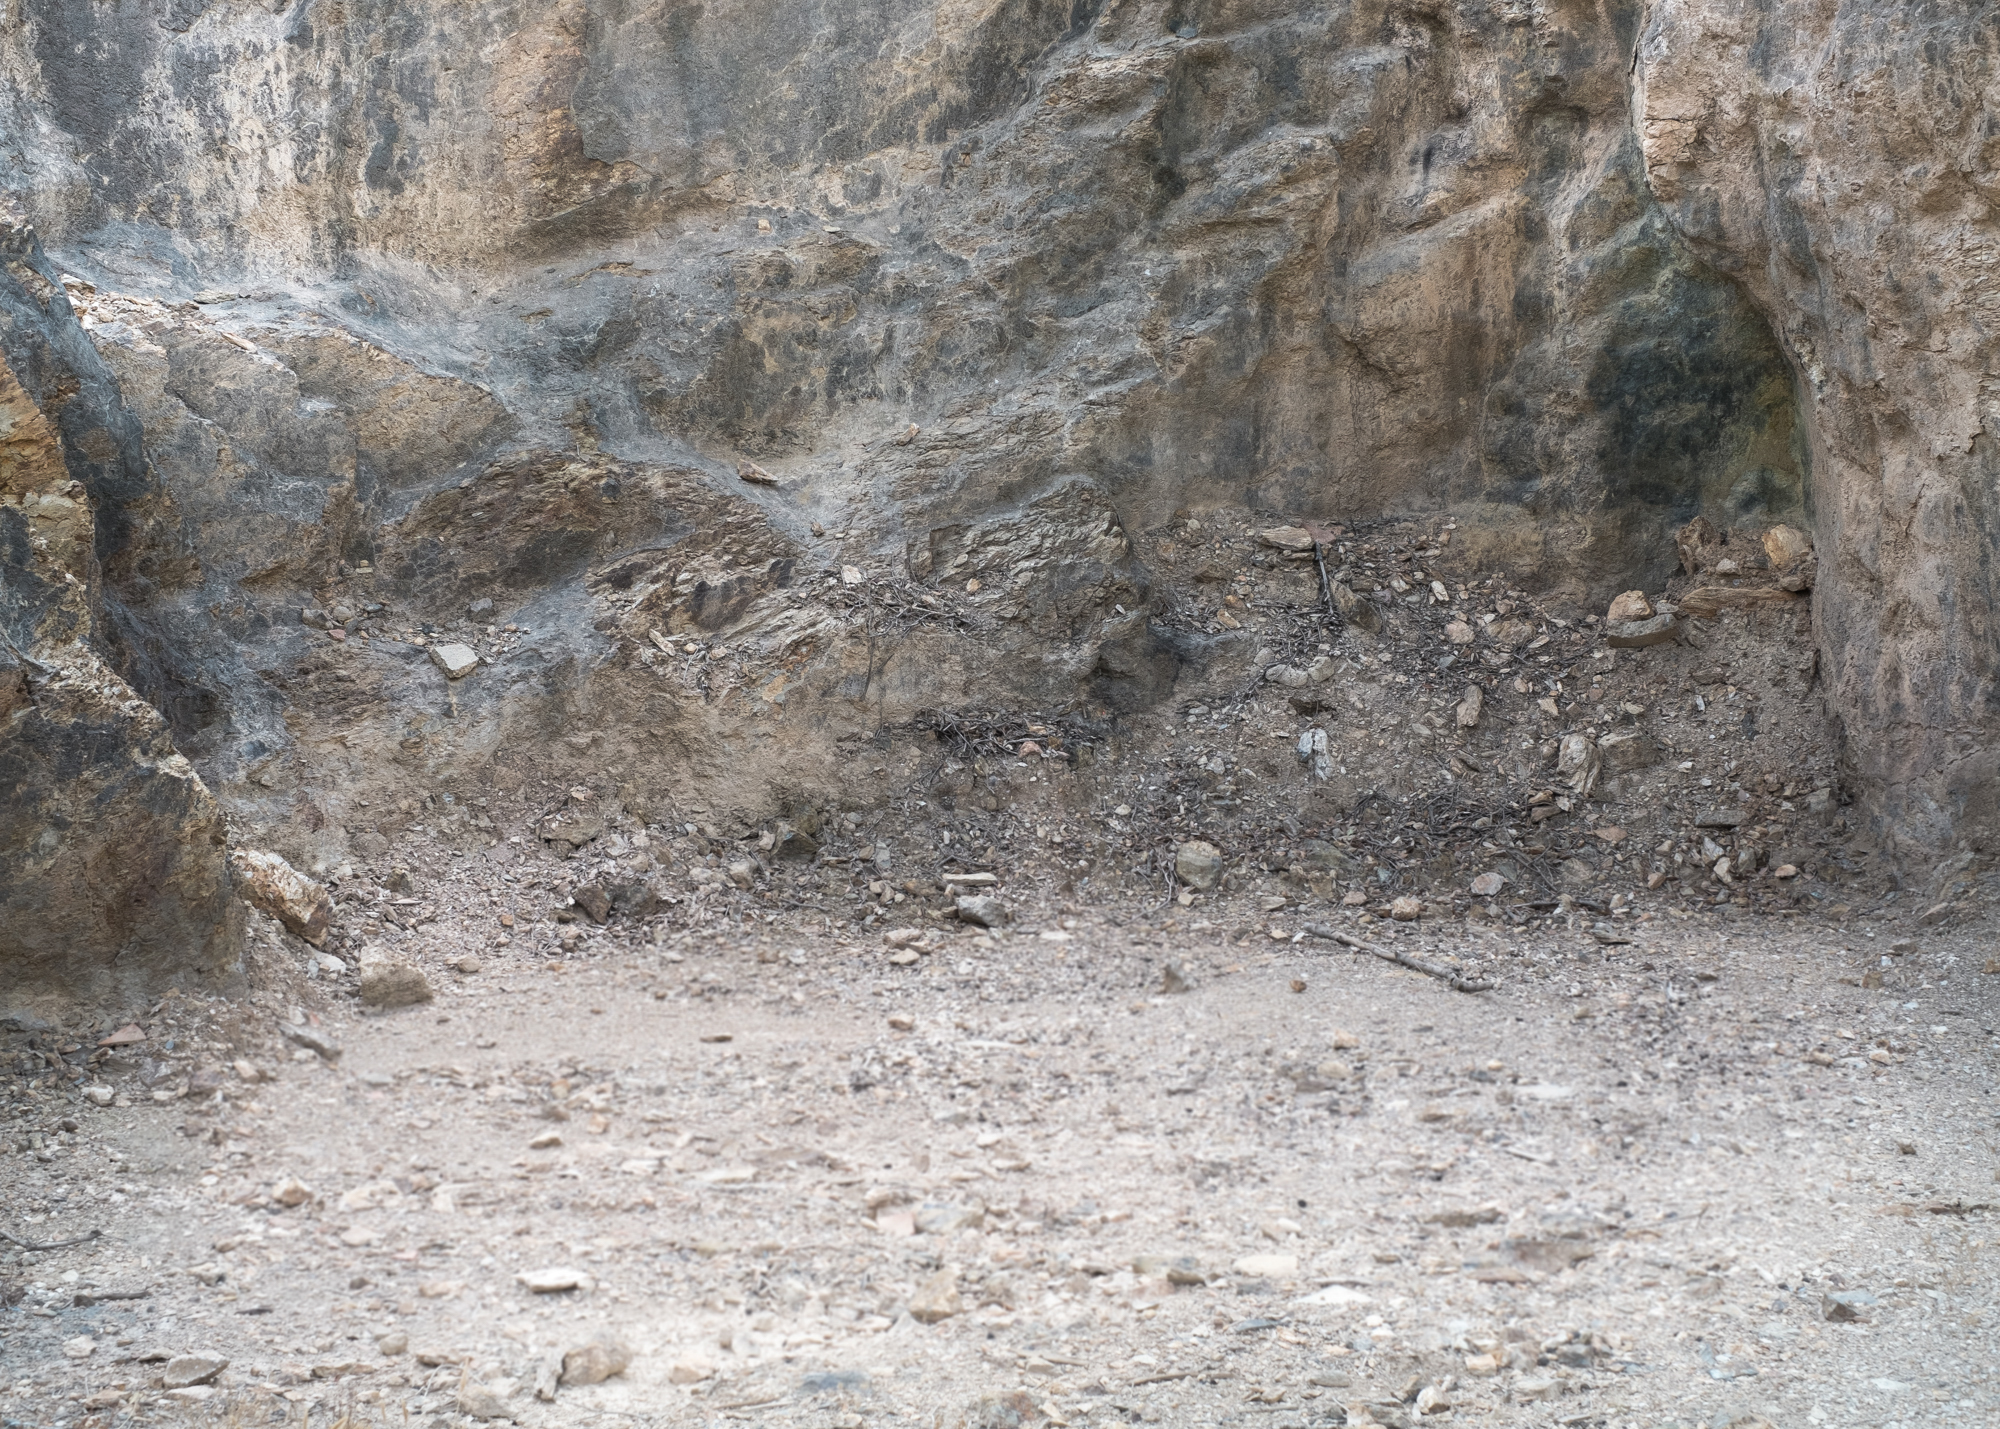  Particolare rocce, miniere di Baccu Locci, comune di Villaputzu, poligono a terra. 